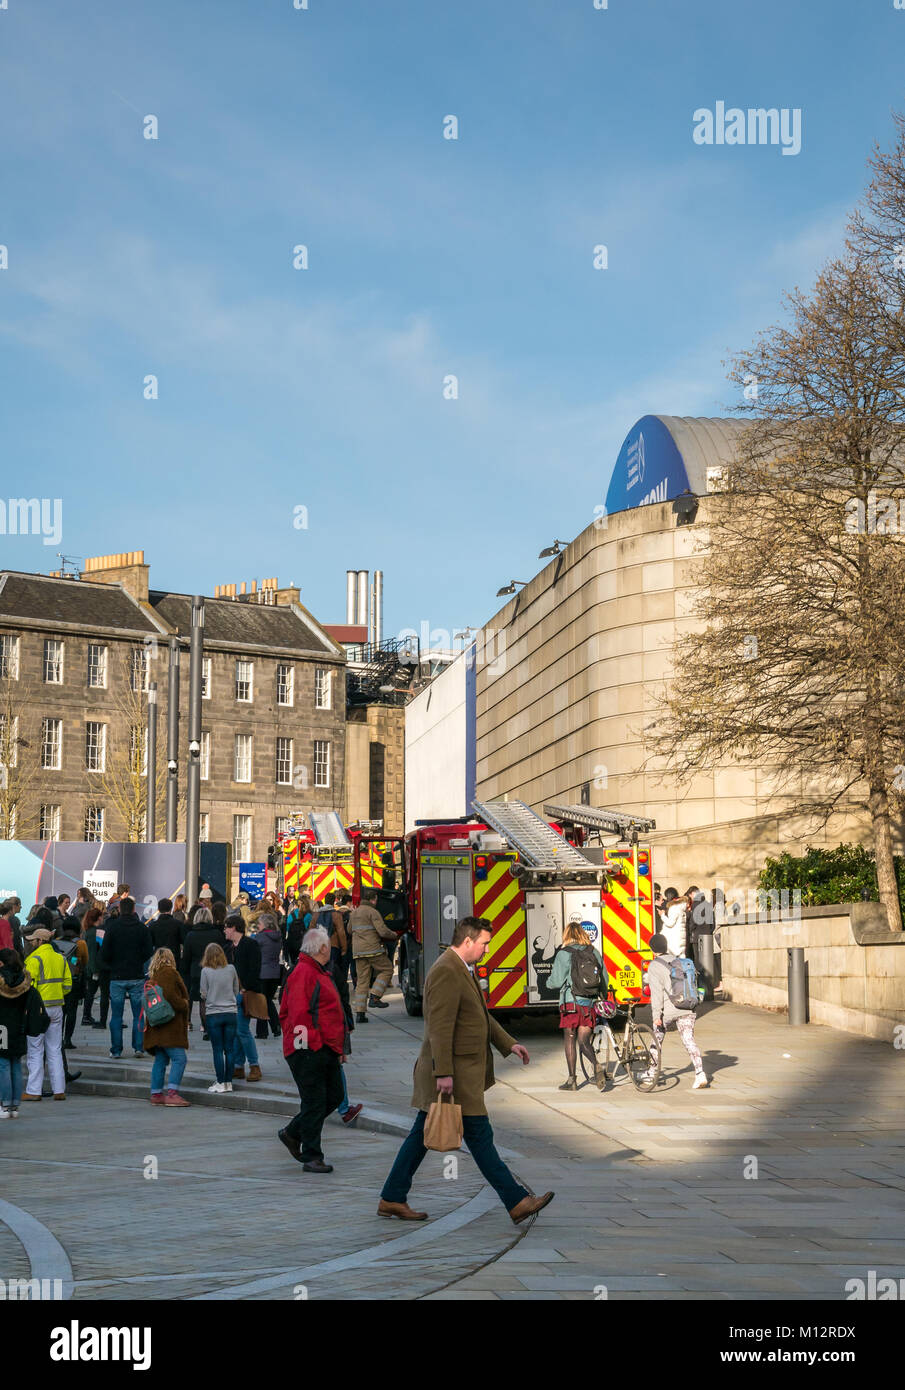 Feuerwehrfahrzeuge, die an einem Fehlalarm teilnehmen, rufen an der Potterow University of Edinburgh Students Association, Briston Square, Edinburgh, Schottland, Großbritannien Stockfoto